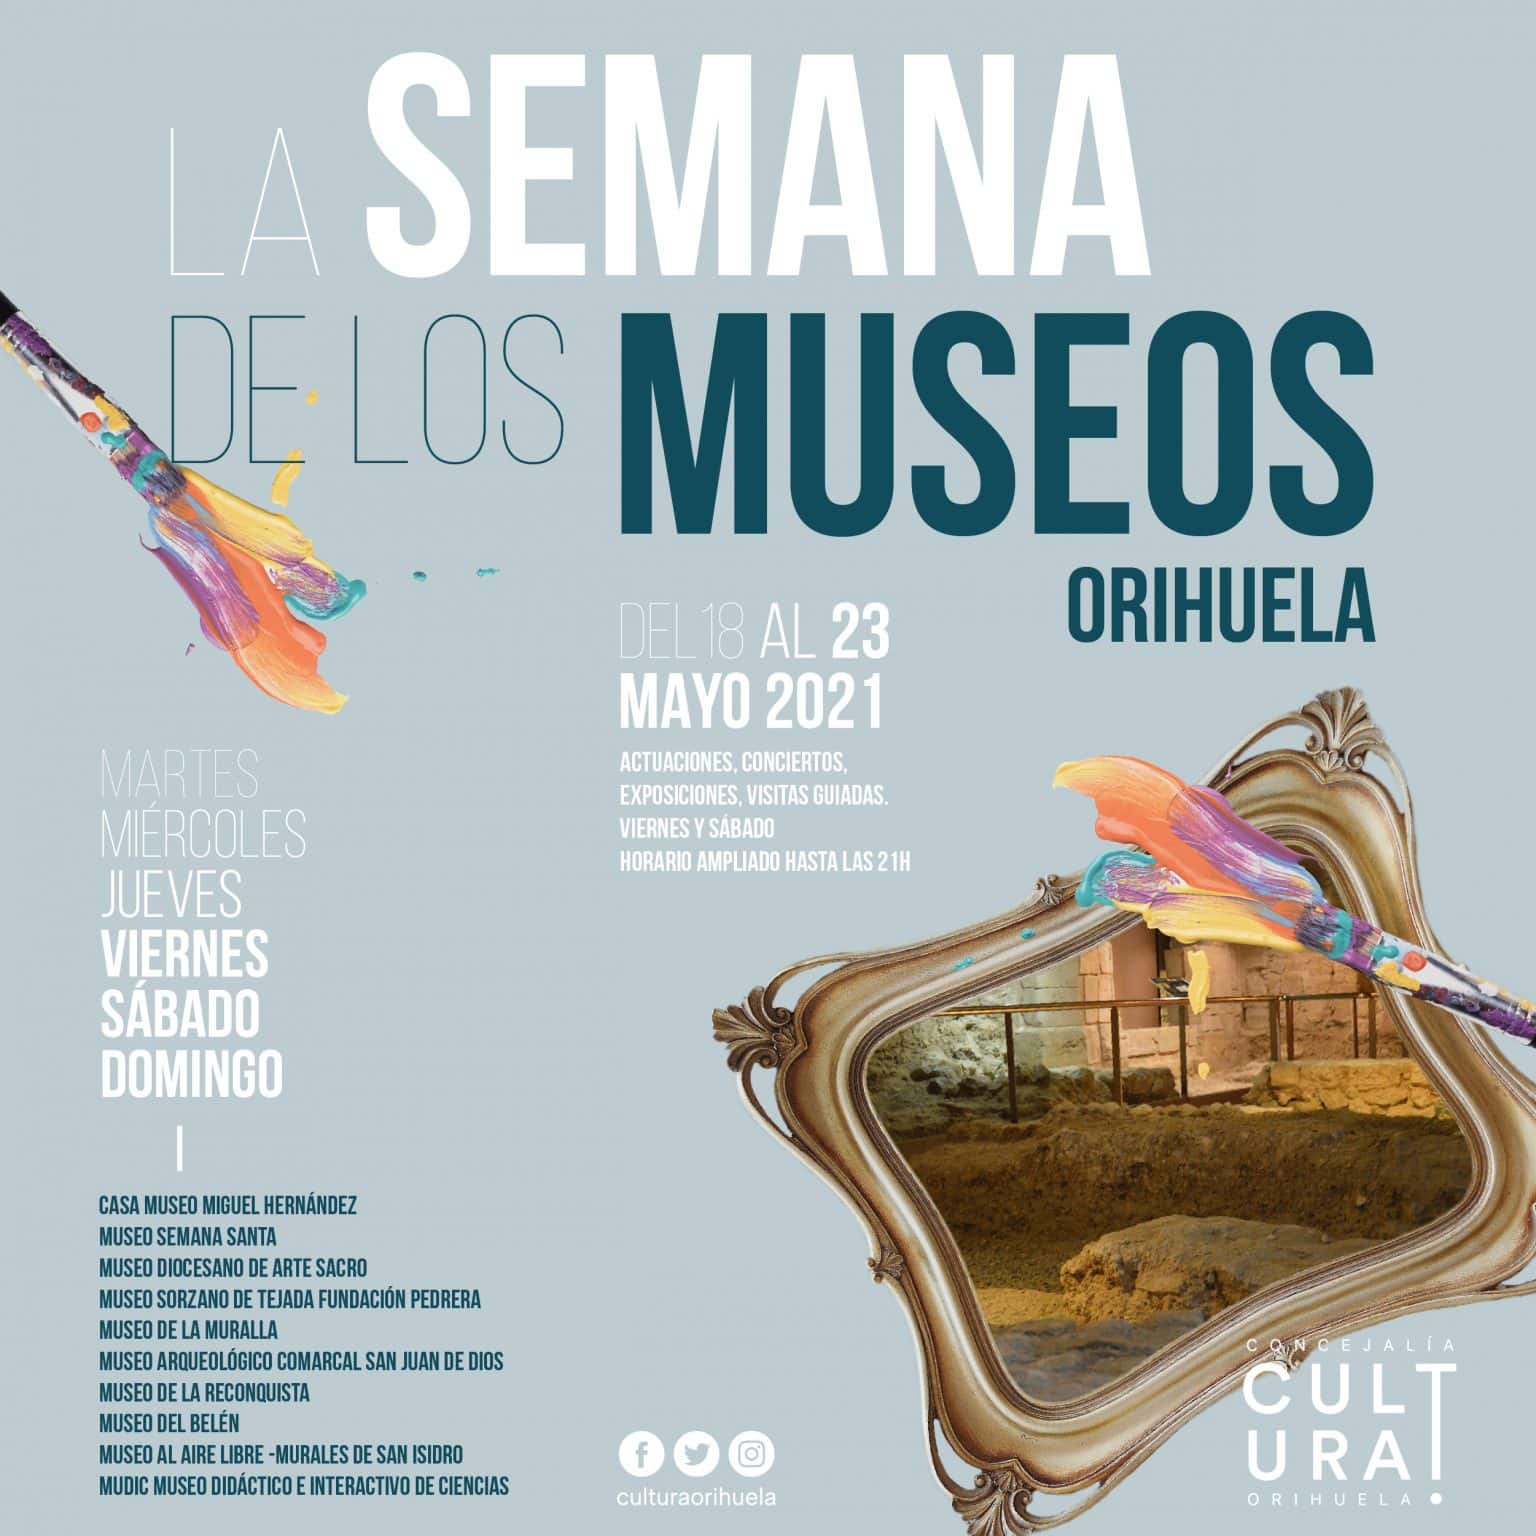 Safe activities during Orihuela’s Museum Week